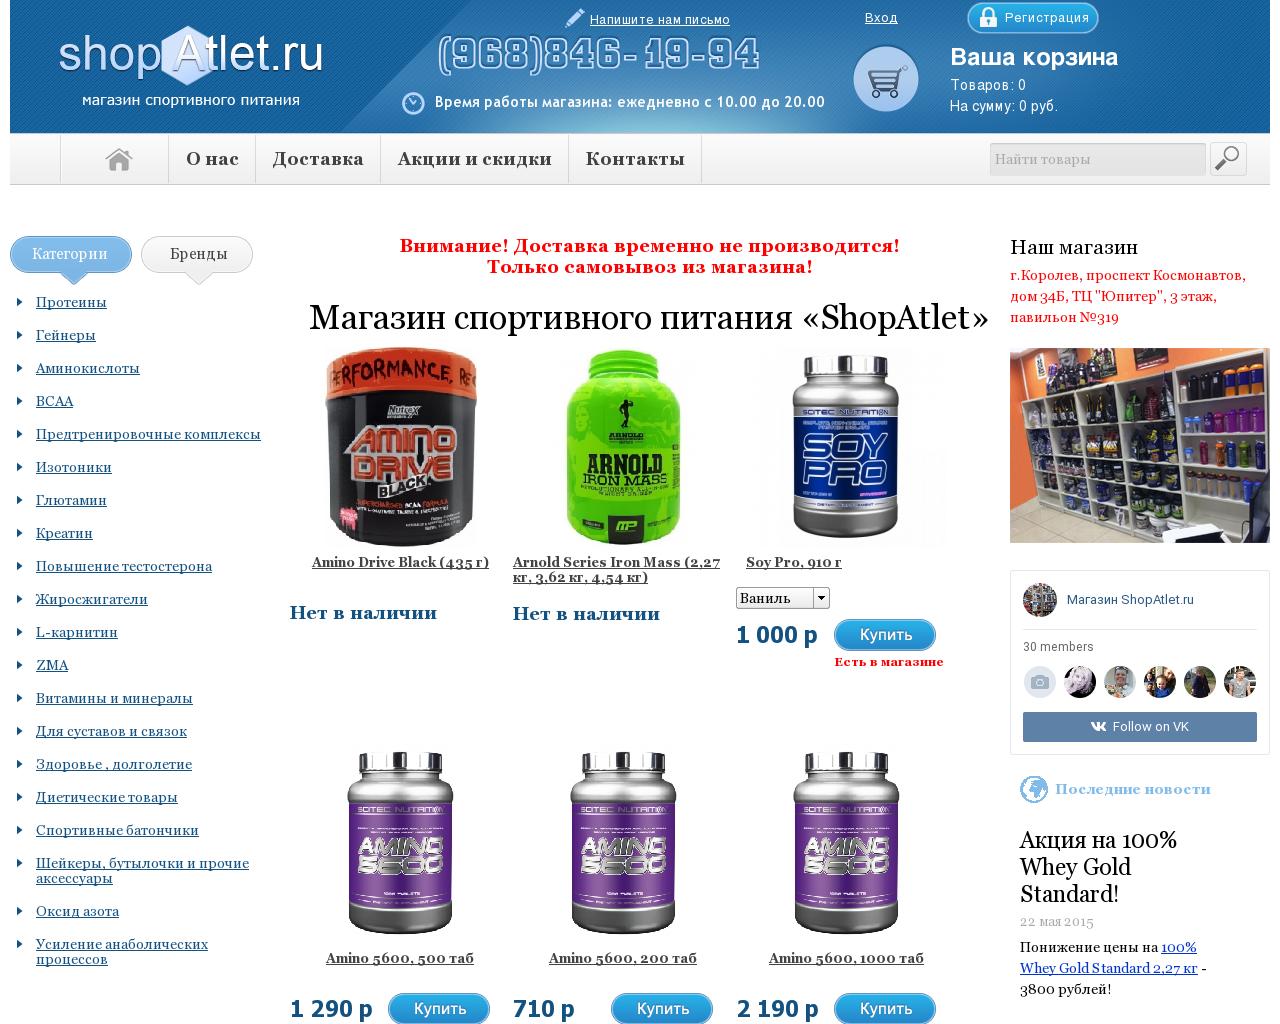 Изображение сайта shopatlet.ru в разрешении 1280x1024